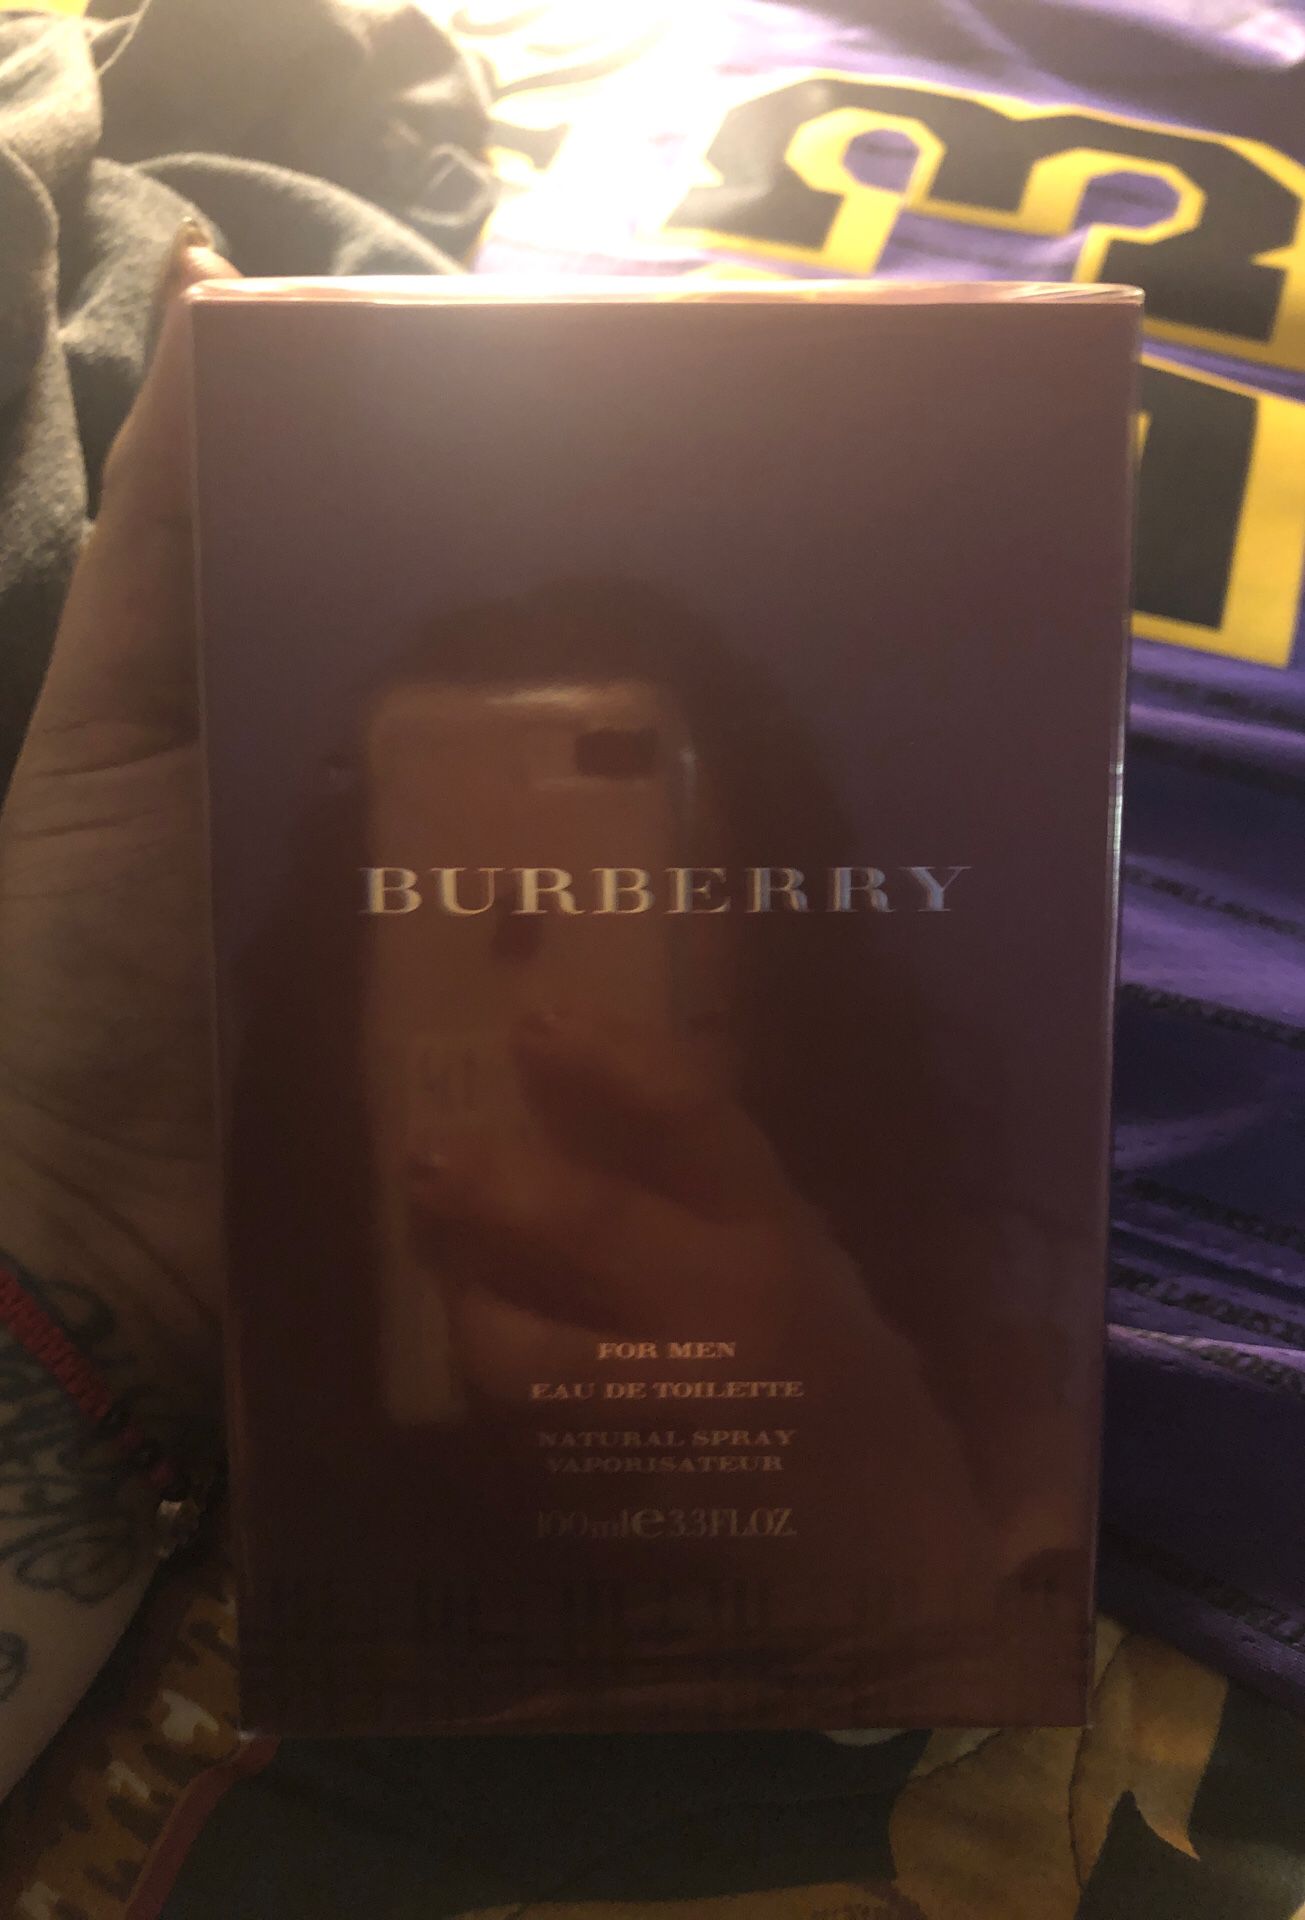 Burberry fragrance for men